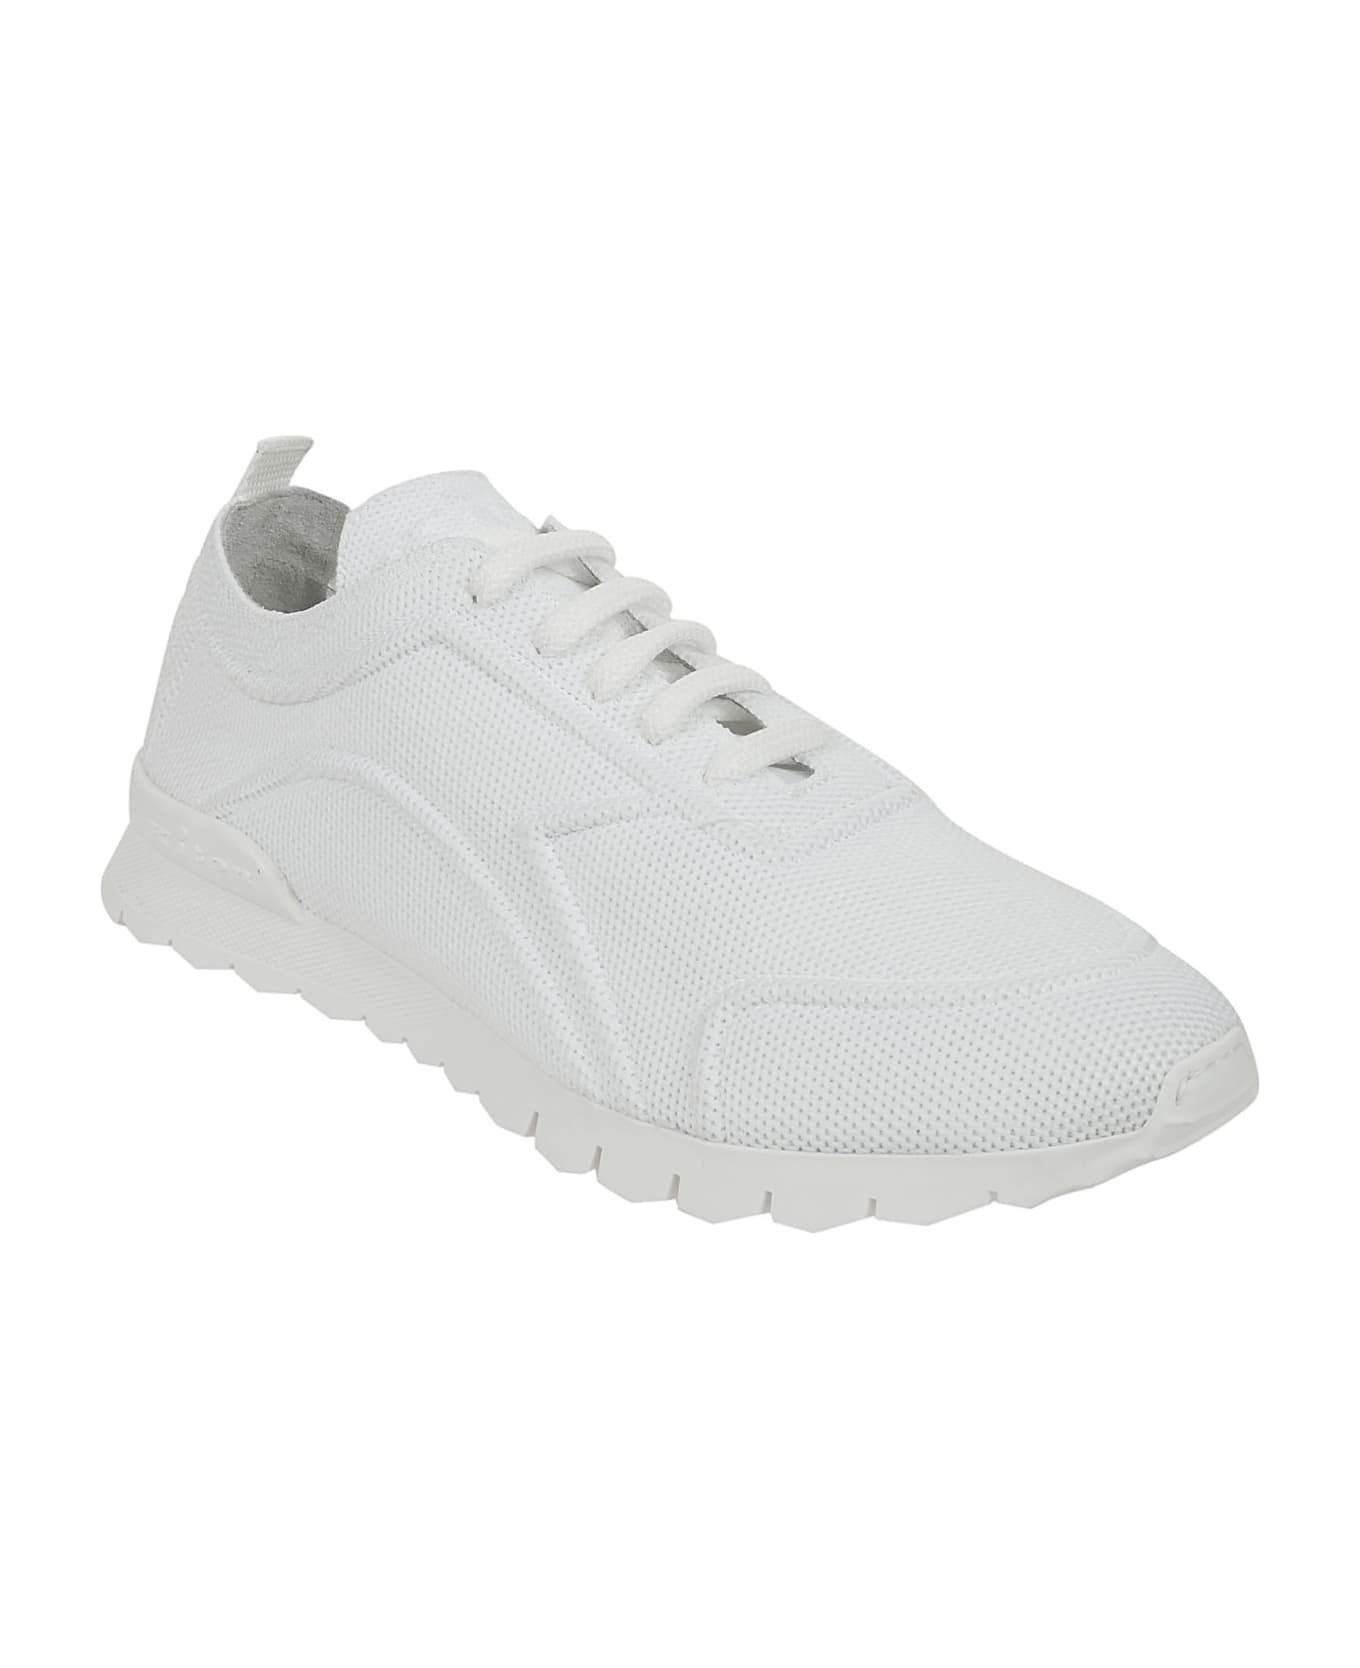 Kiton Sneakers - White スニーカー